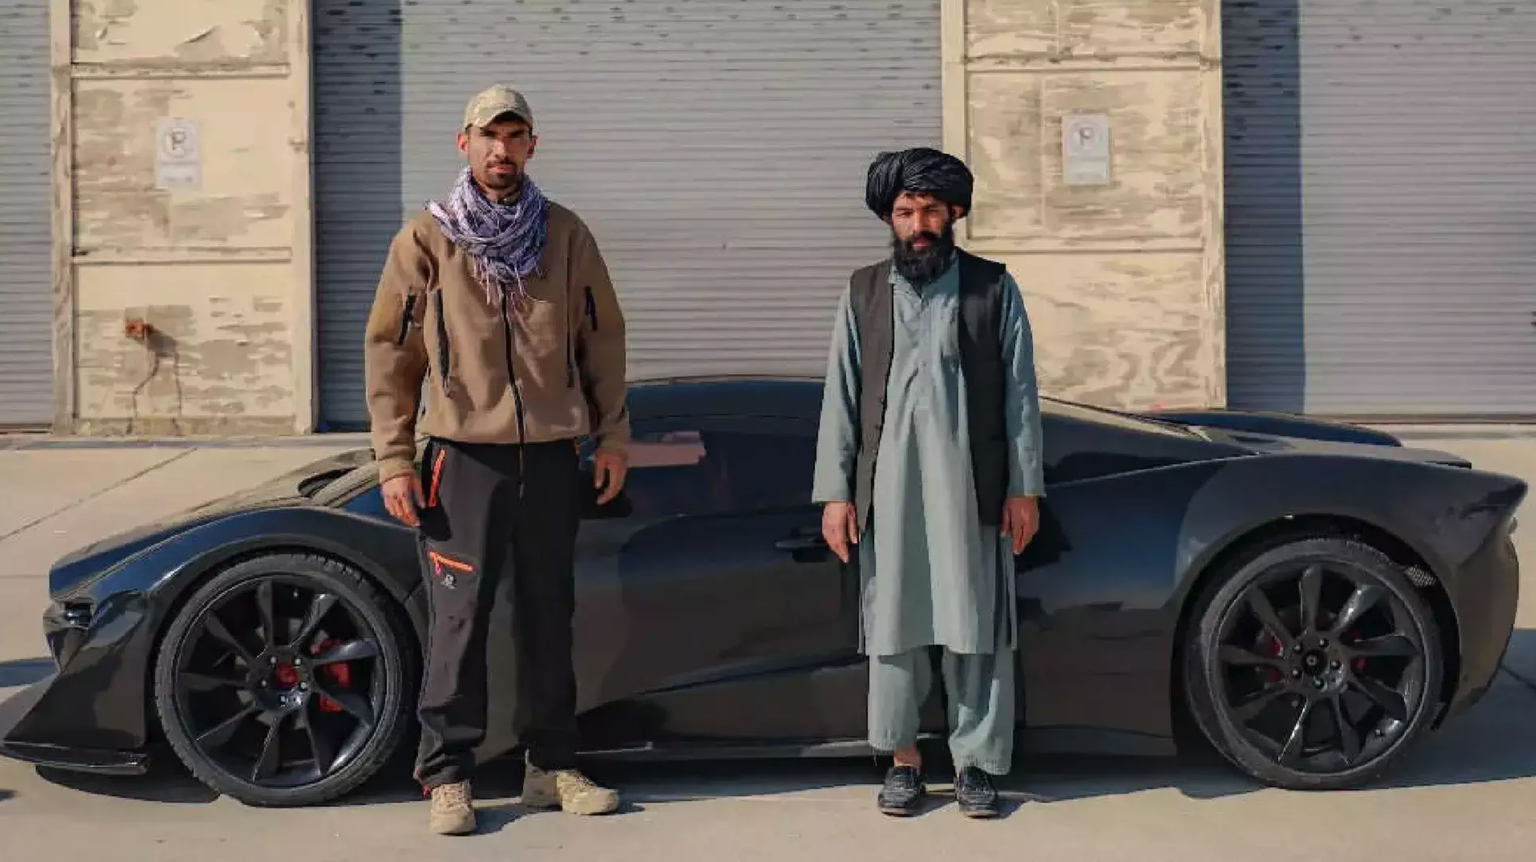 La voiture, développée avant la prise de pouvoir, a été présentée par les talibans.